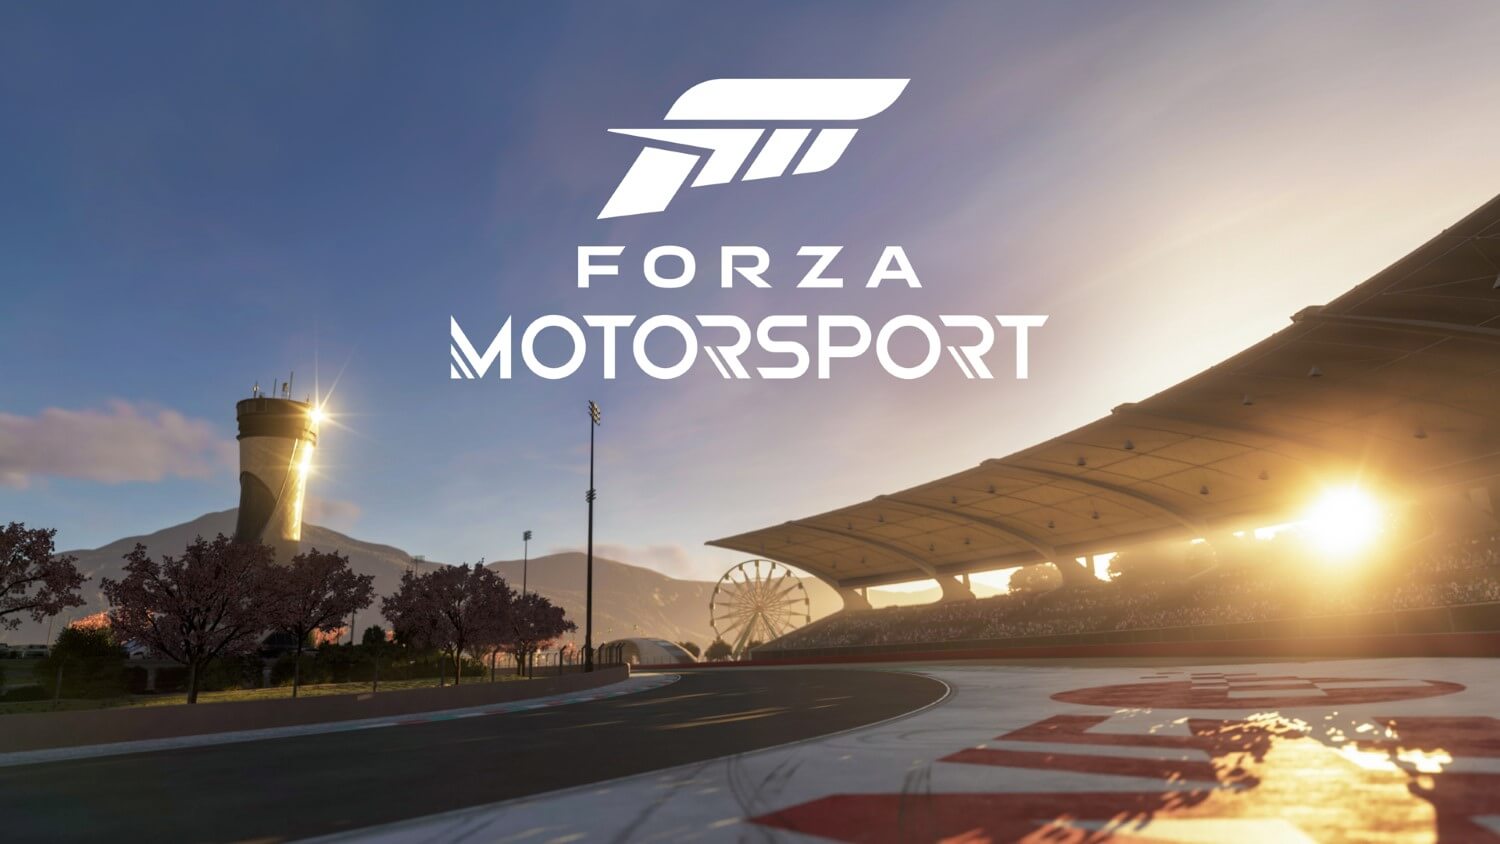 В Forza Motorsport не будет дрифт и драг гонок на старте, их обещают добавить позже: с сайта NEWXBOXONE.RU